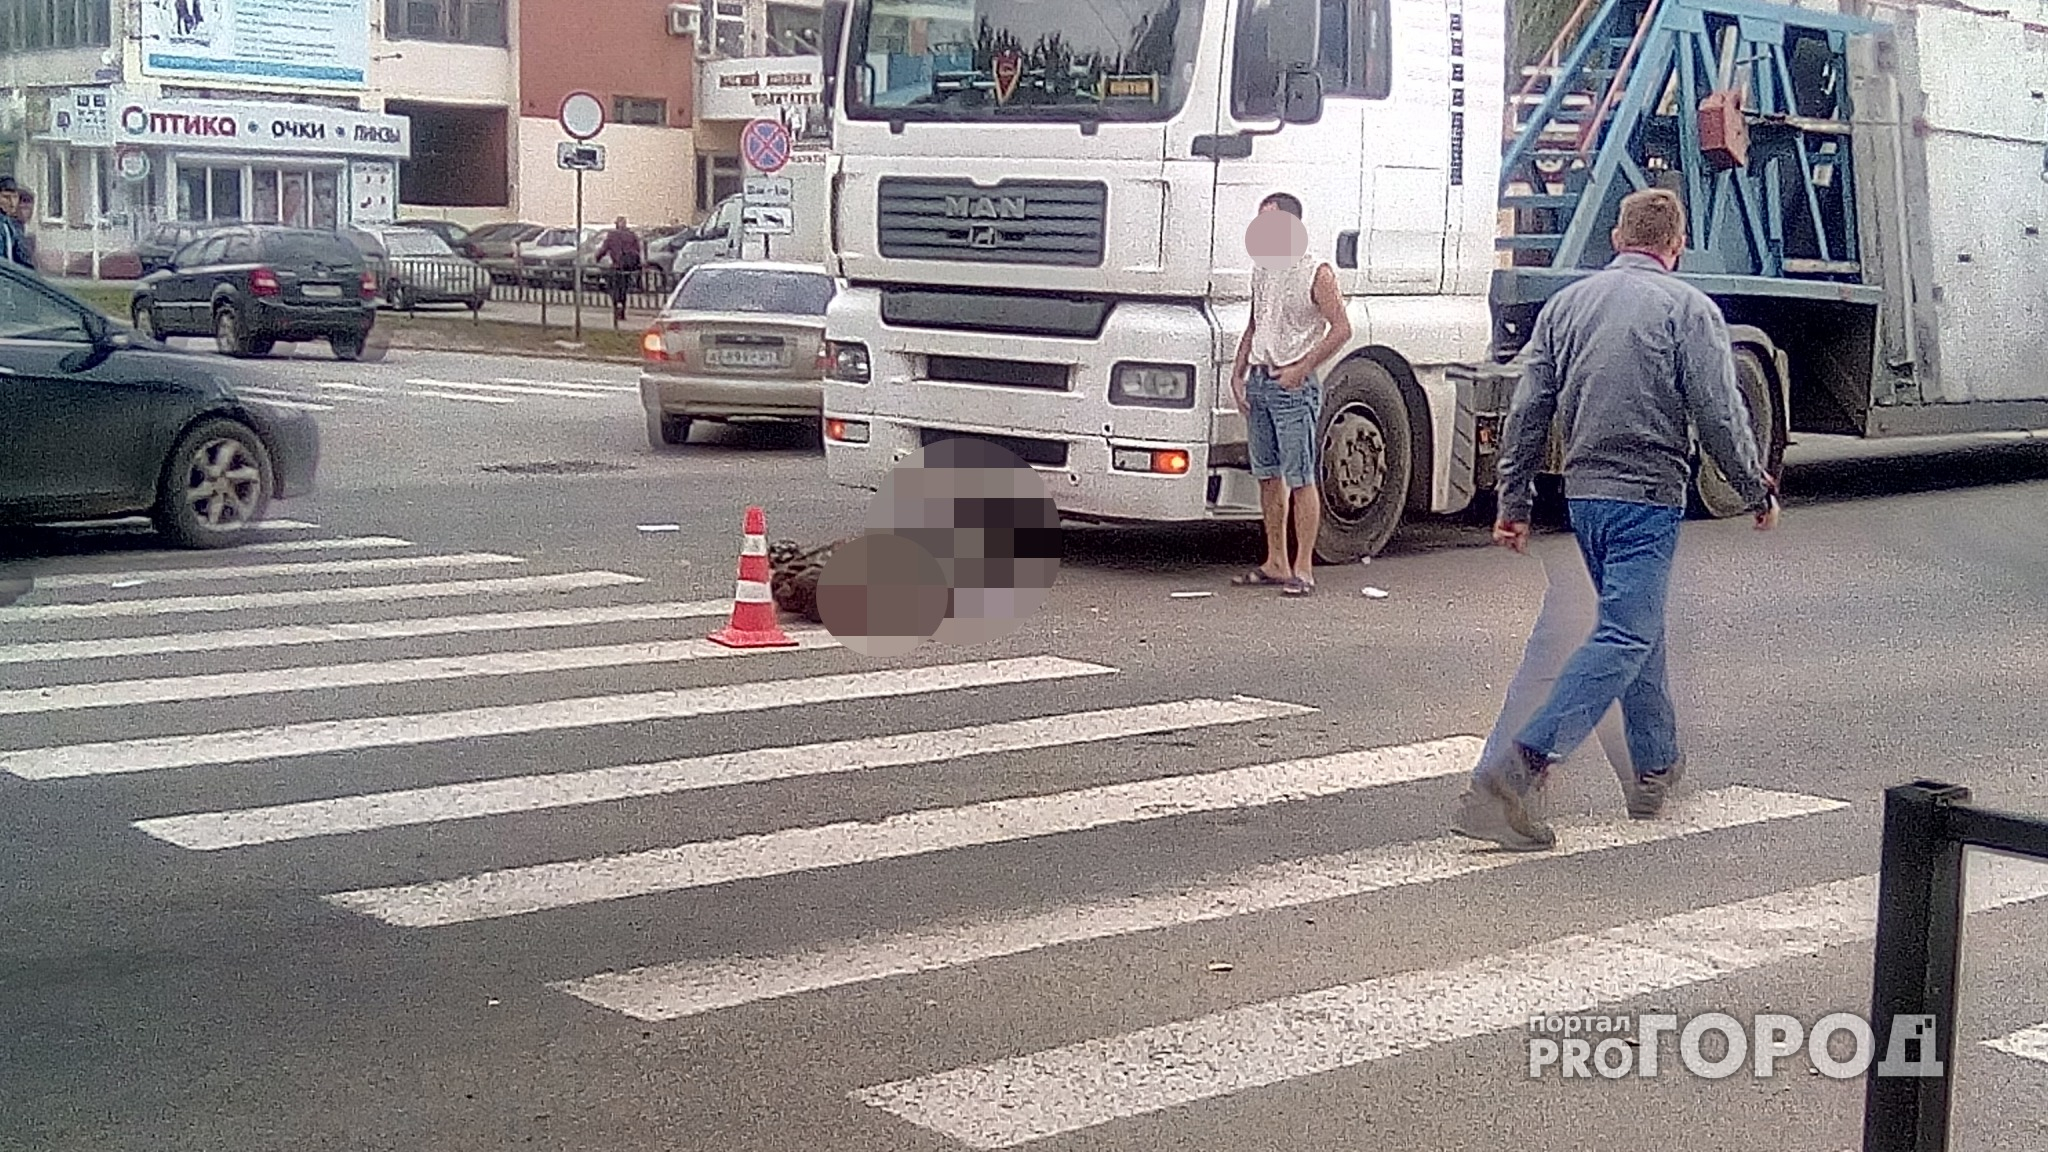 Фура сбила пешехода на перекрестке в Йошкар-Оле